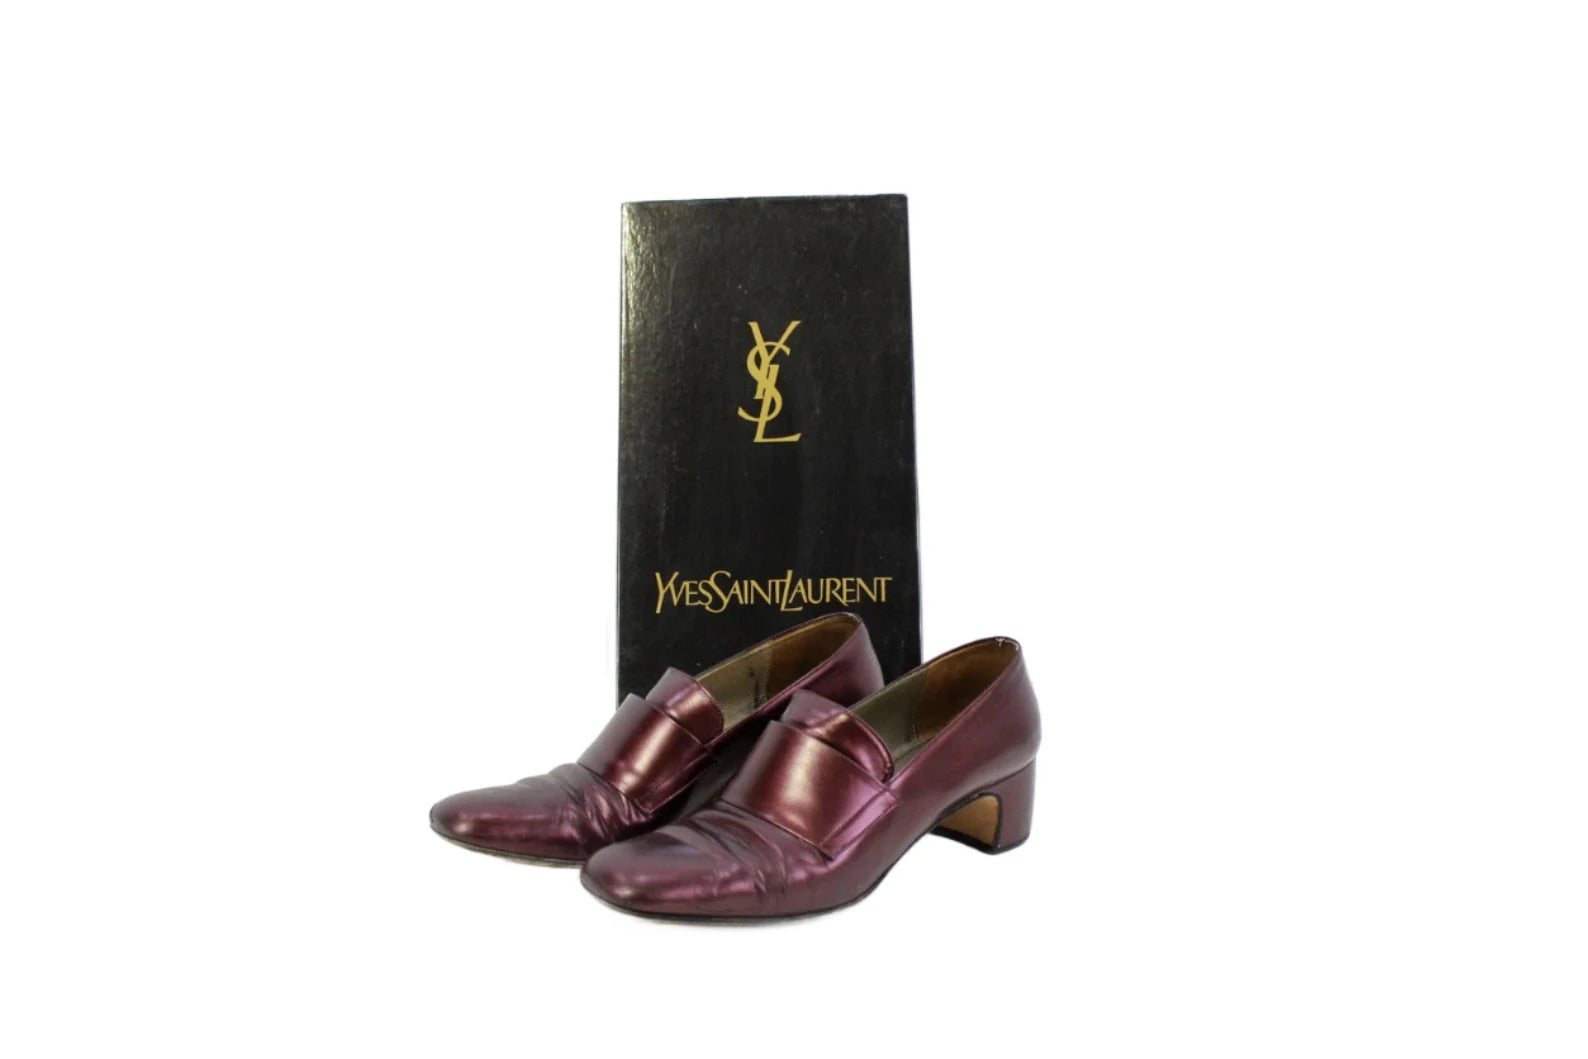 Vintage Yves Saint Laurent Burgundy Leather Loafer Heels, Size 7